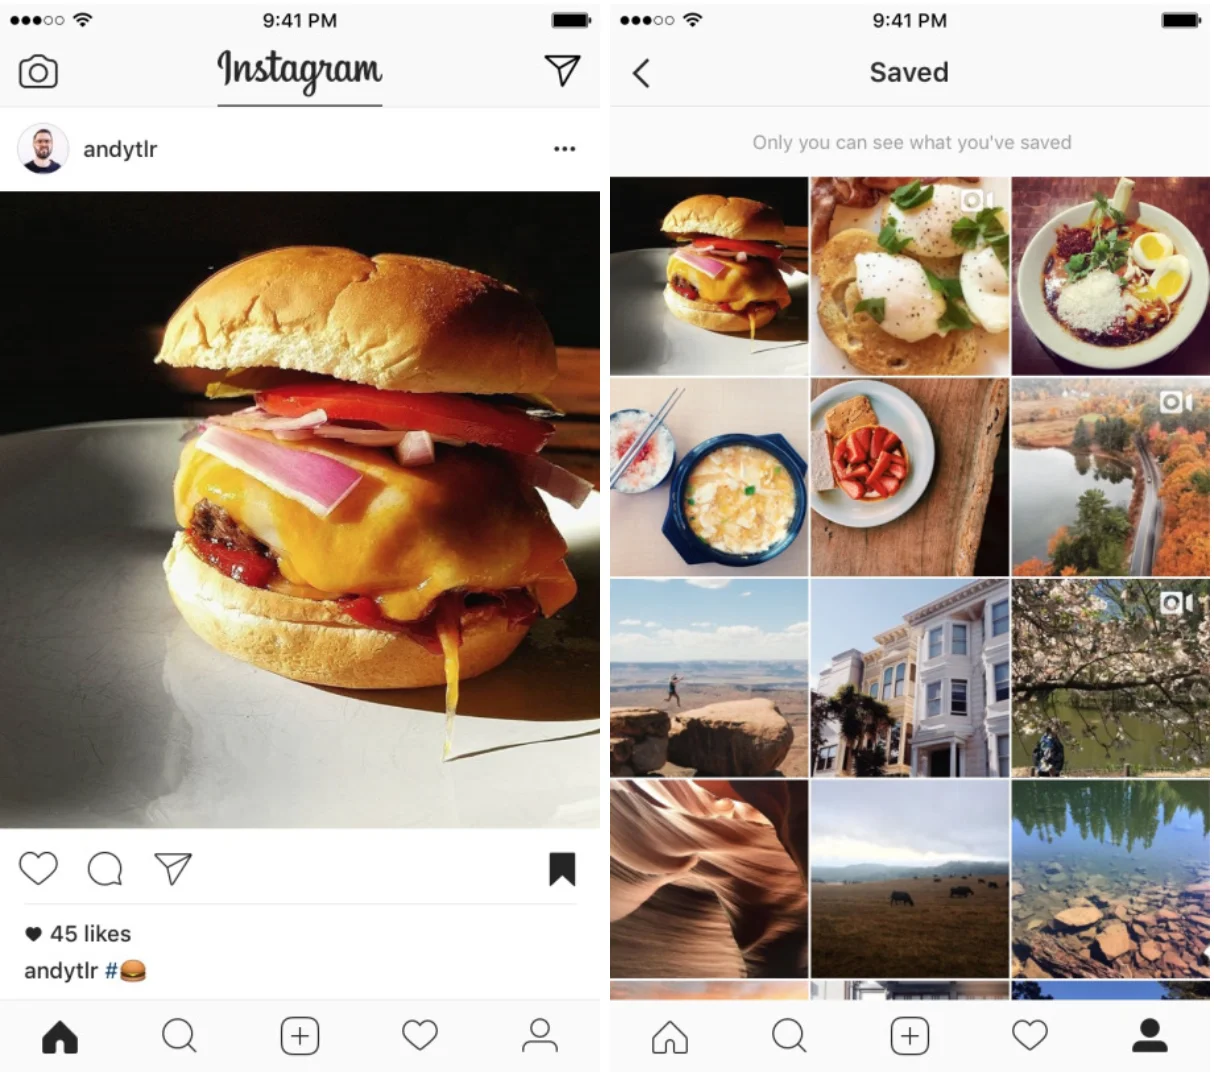 Шаблон истории рецептов instagram